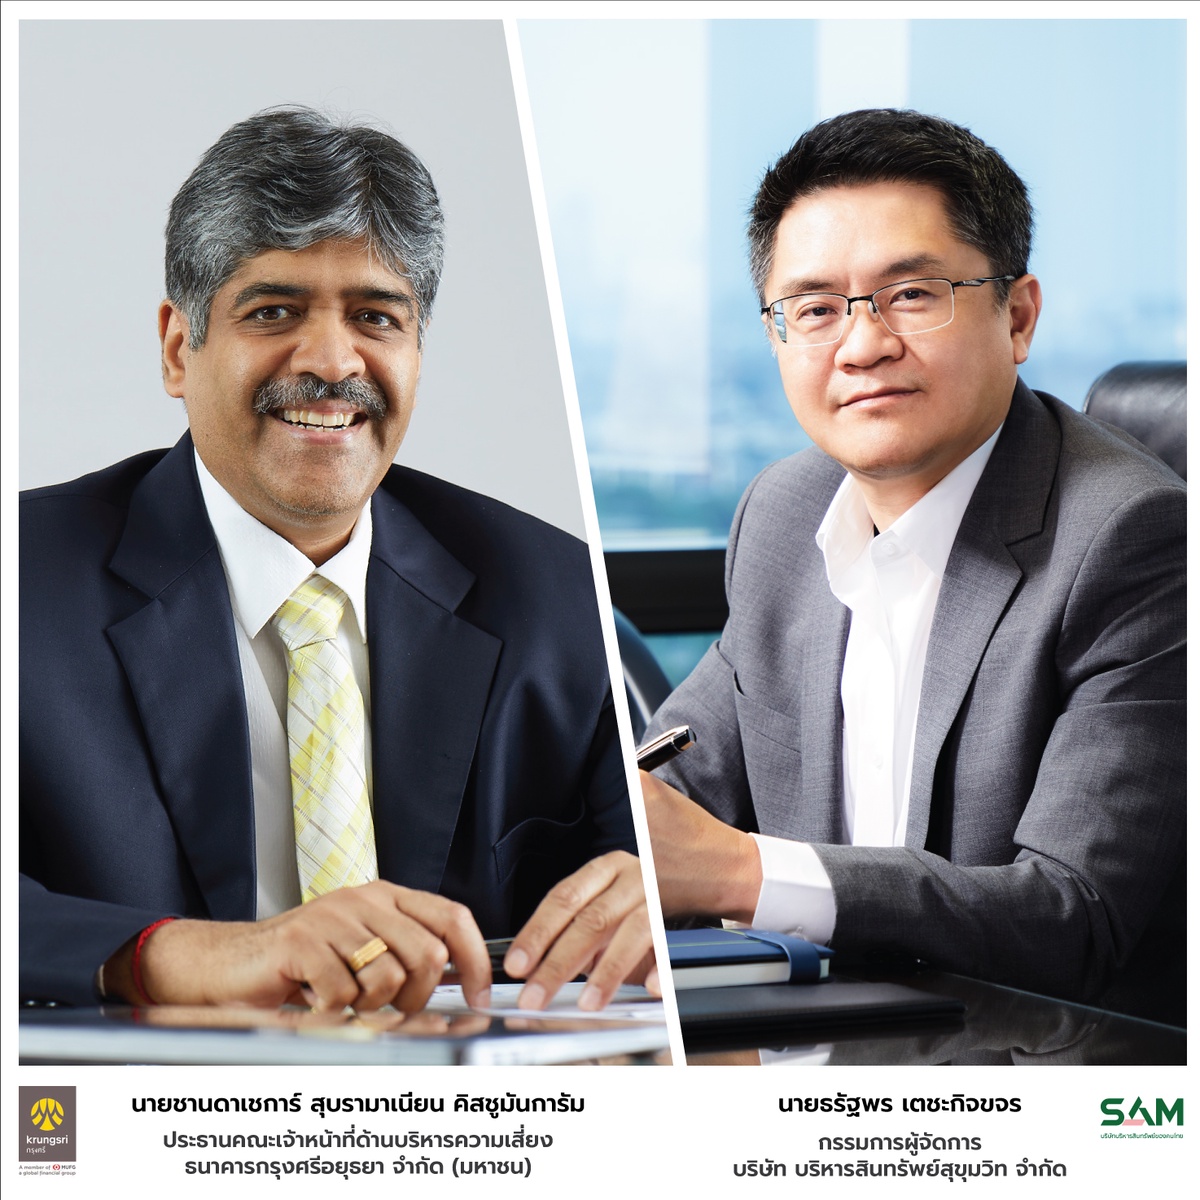 SAM บริษัทบริหารสินทรัพย์ของคนไทย ชูบทบาท AMC ภาครัฐ เผยชนะประมูลหนี้เสียจากแบงก์ ครึ่งปี 65 กวาด NPL เข้าพอร์ตแล้วกว่า 5,000